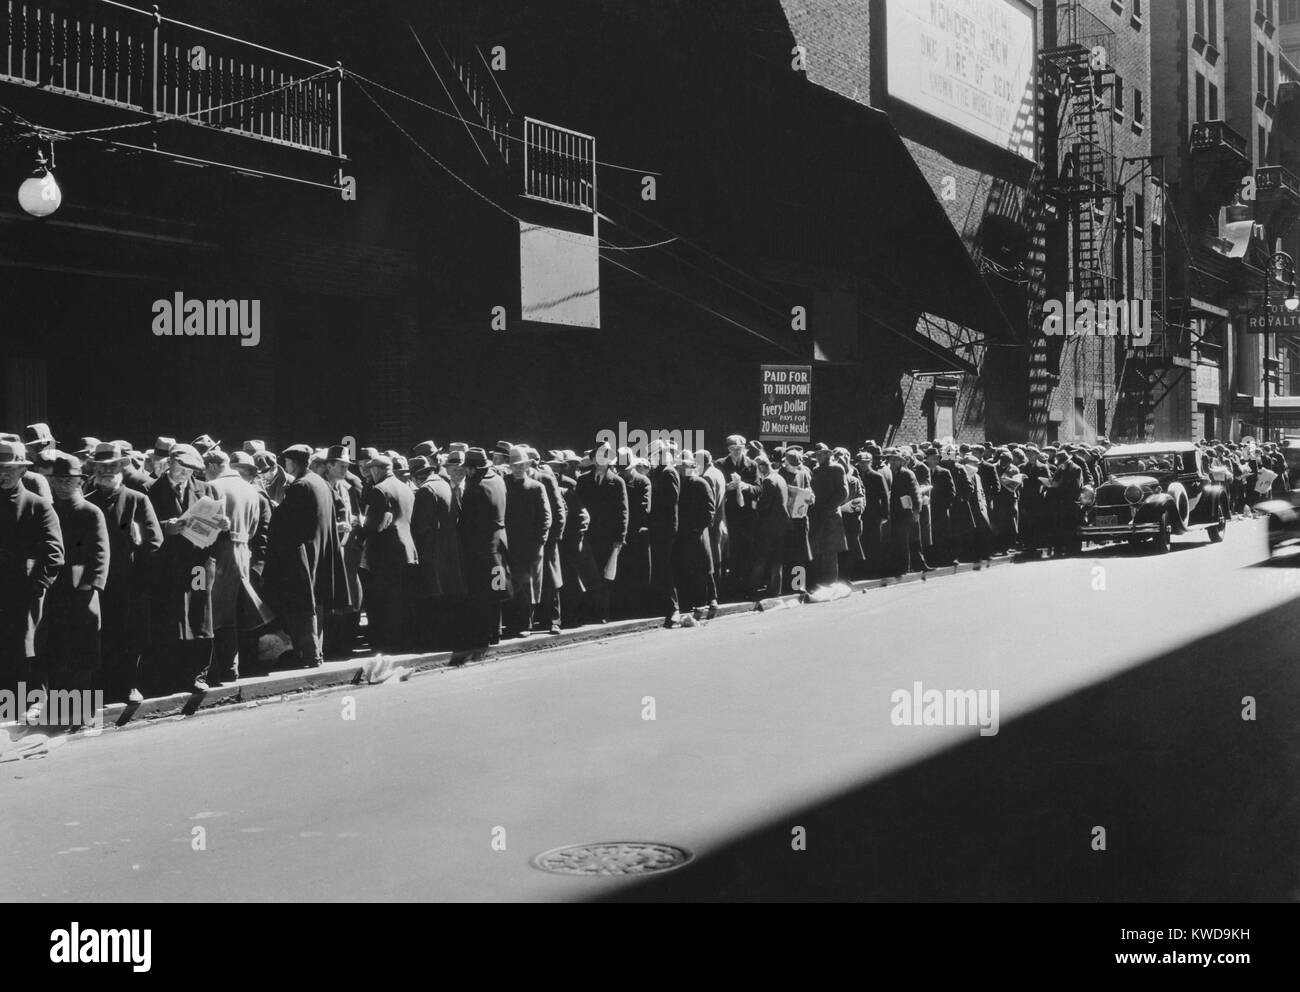 New York Männer in einem Brot während der Großen Depression, 1935-38. Die Zeichen lesen, "Bezahlt bis zu diesem Punkt, jeder Dollar zahlt für 20 weitere Mahlzeiten. Männer vor der Anmeldung versichert sind fünf Prozent Mahlzeit - der Rest muss für mehr Beiträge warten." Viele Männer gingen in Suppenküchen, damit ihre Familien mehr haben würde, zu Hause zu essen (BSLOC 2016 10 210) Stockfoto